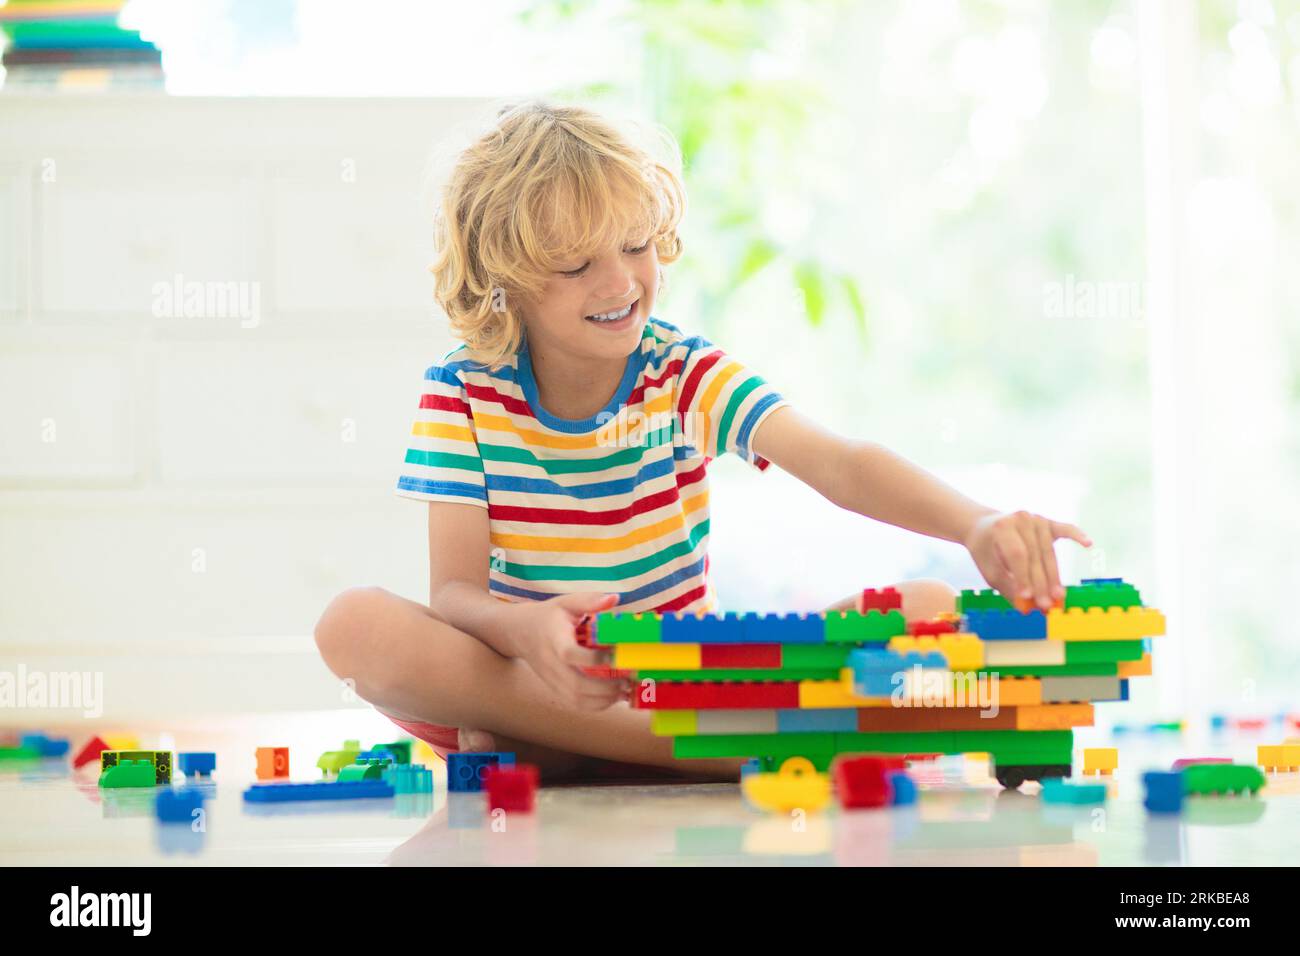 Les enfants jouent avec des blocs colorés. Tour de construction de petit garçon à la maison ou à la garderie. Jouet éducatif pour jeune enfant. Construction jeu créatif pour bébé Banque D'Images